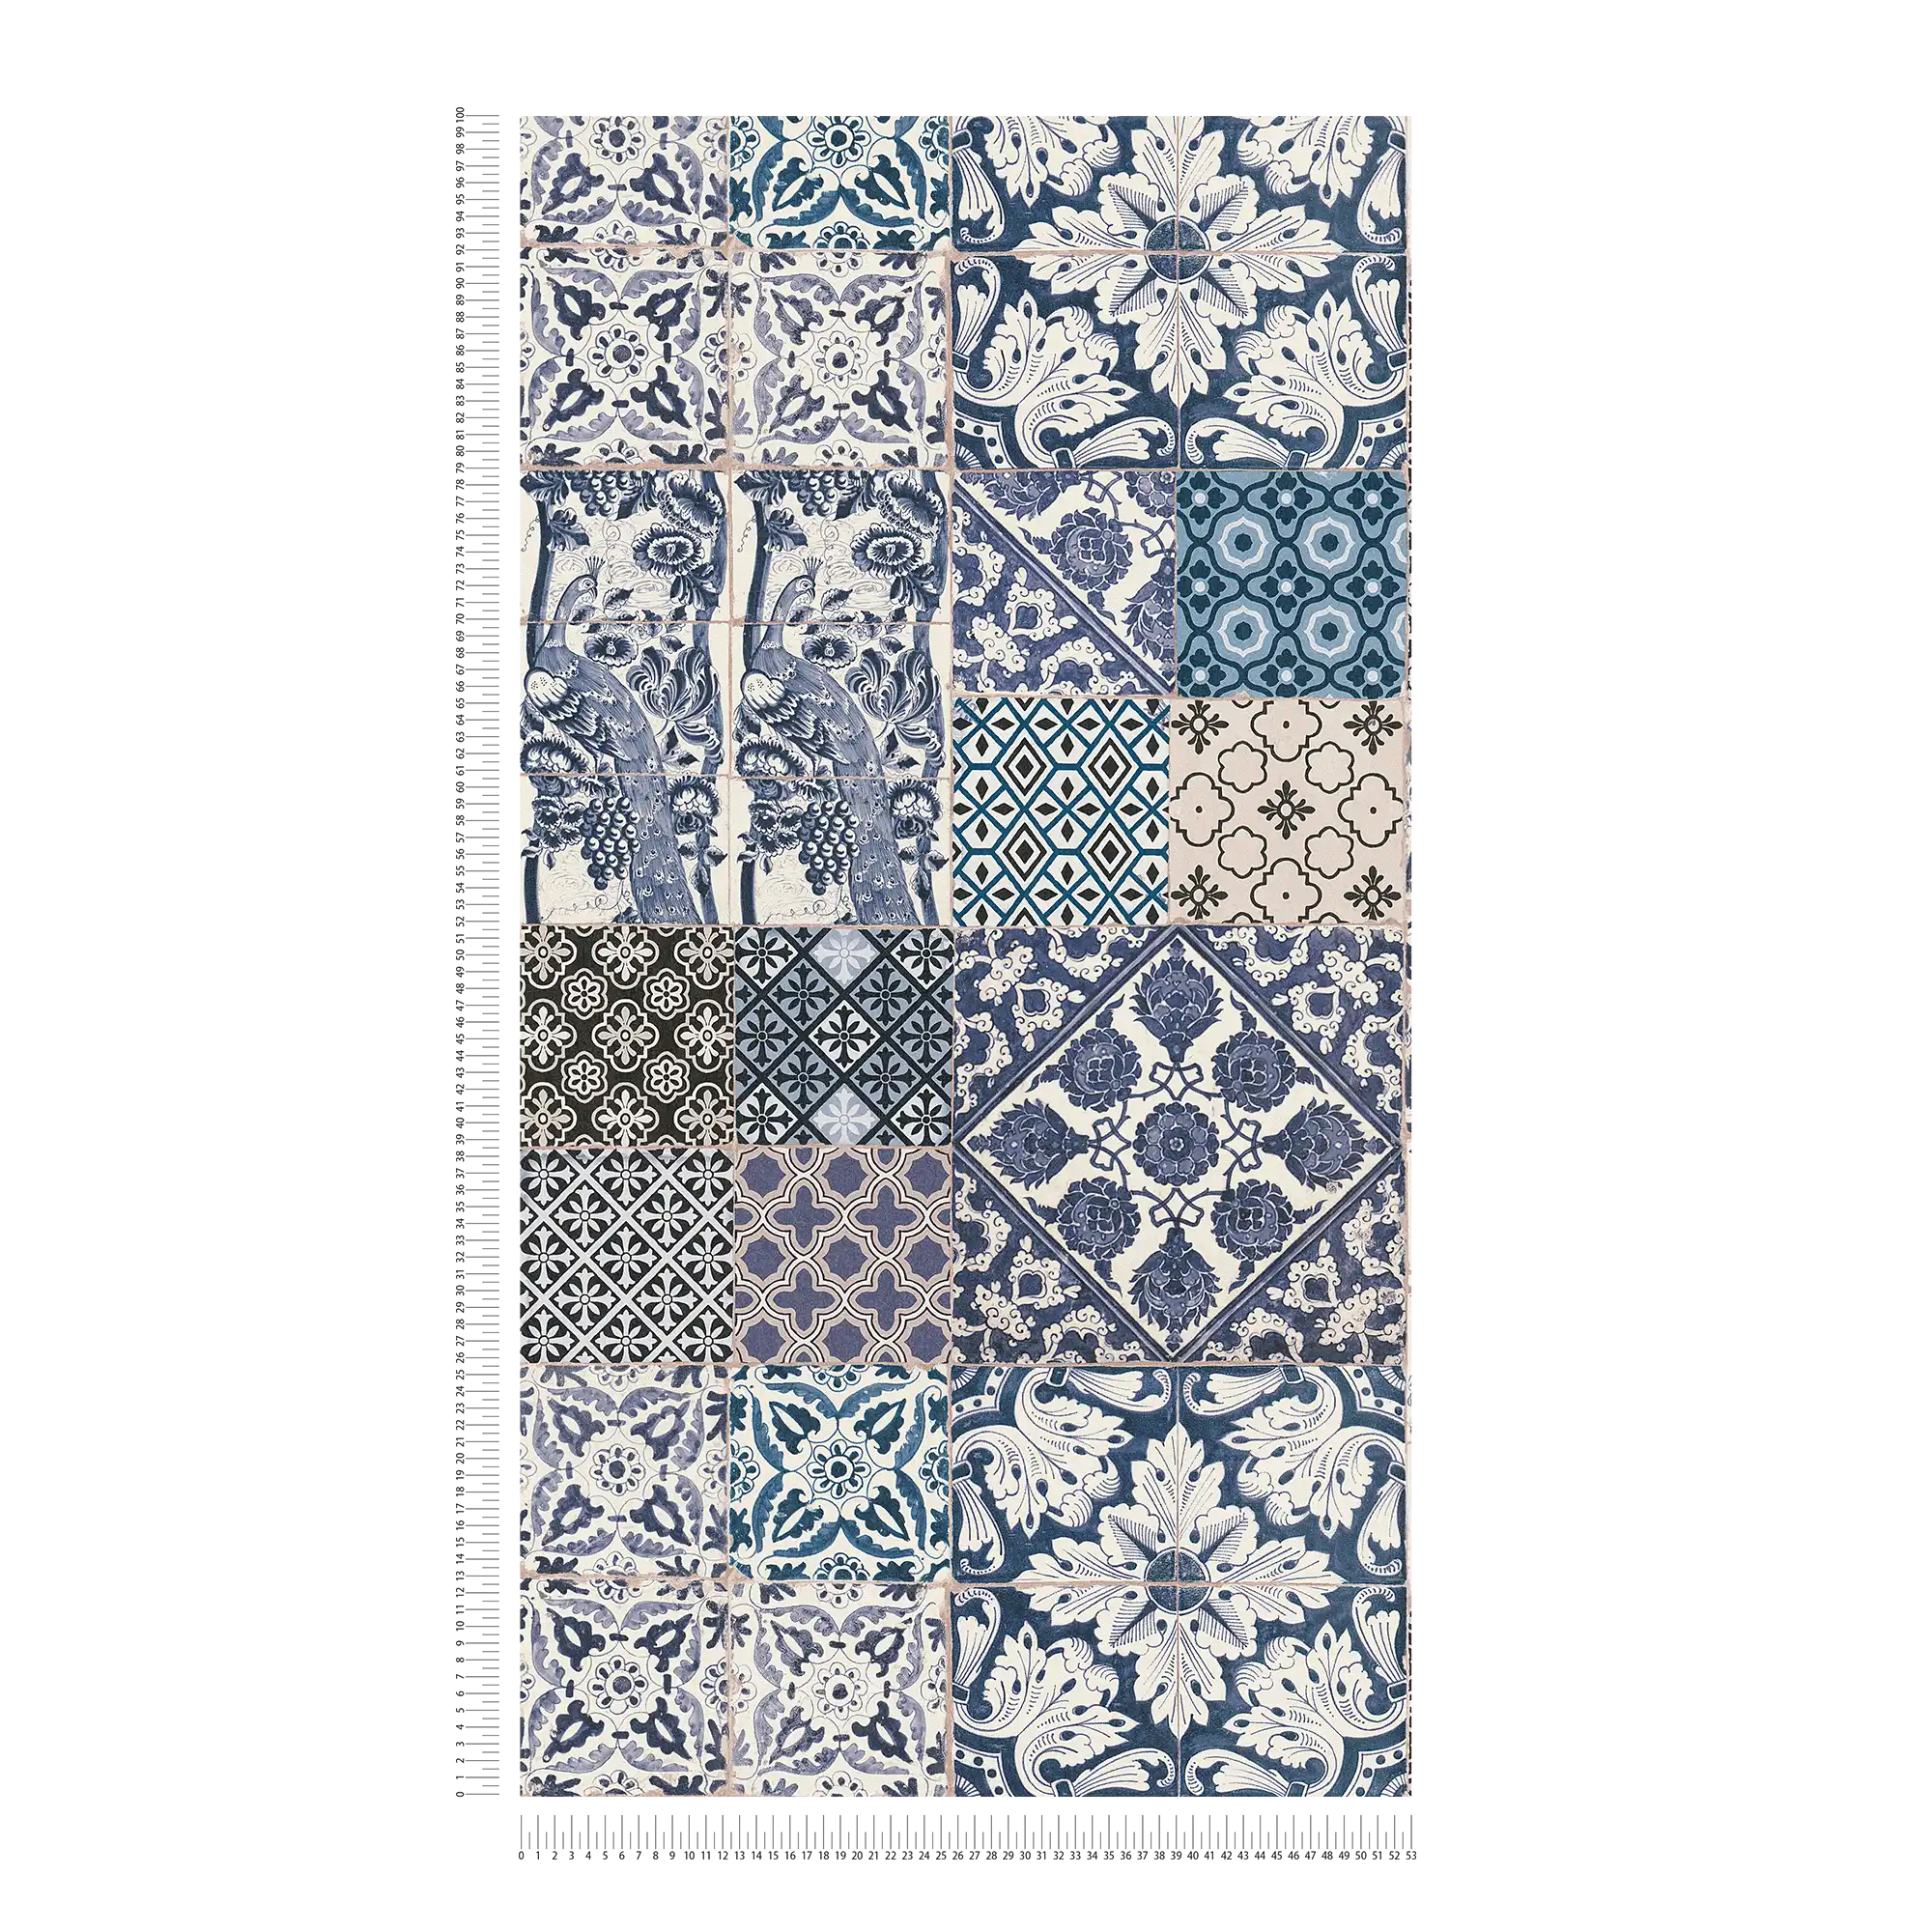             Wallpaper in tile & mosaic design - blue, cream, white
        